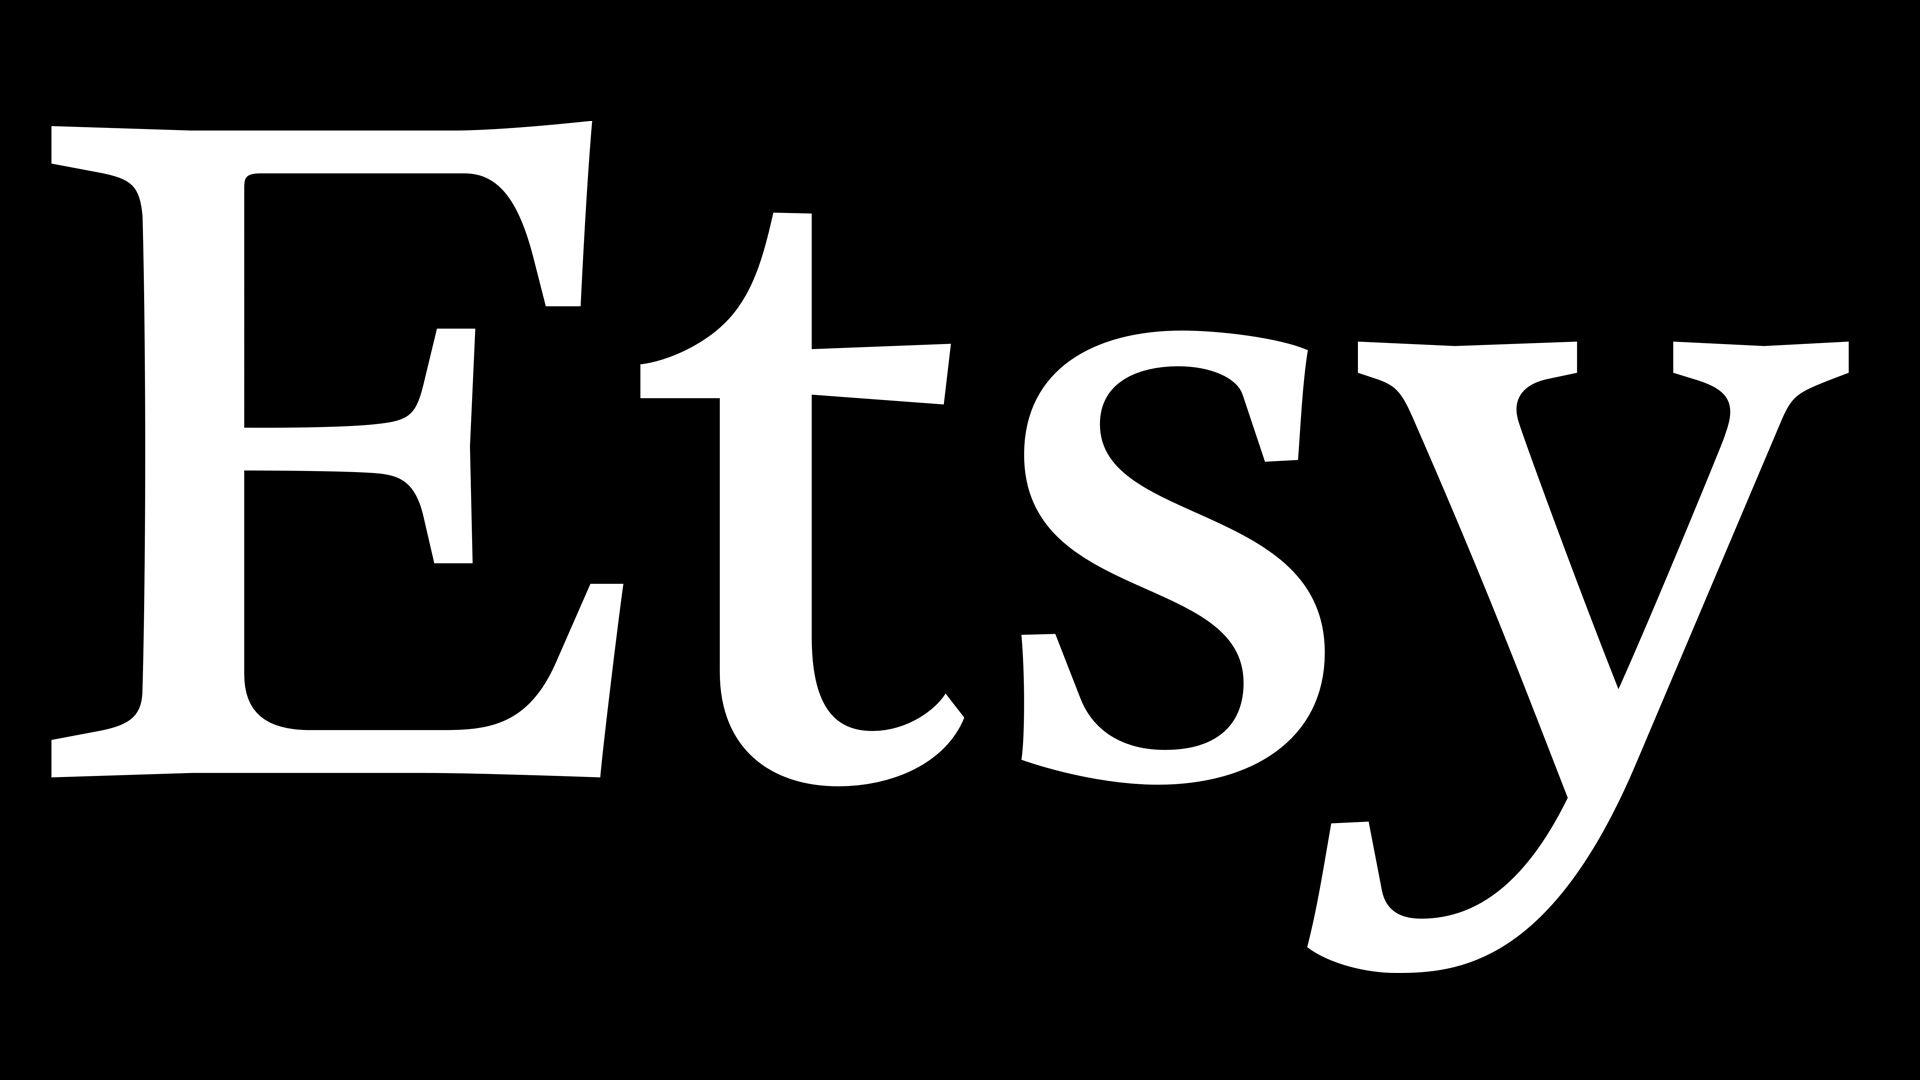 Etsy Logo - Etsy Logo, Etsy Symbol, Meaning, History and Evolution